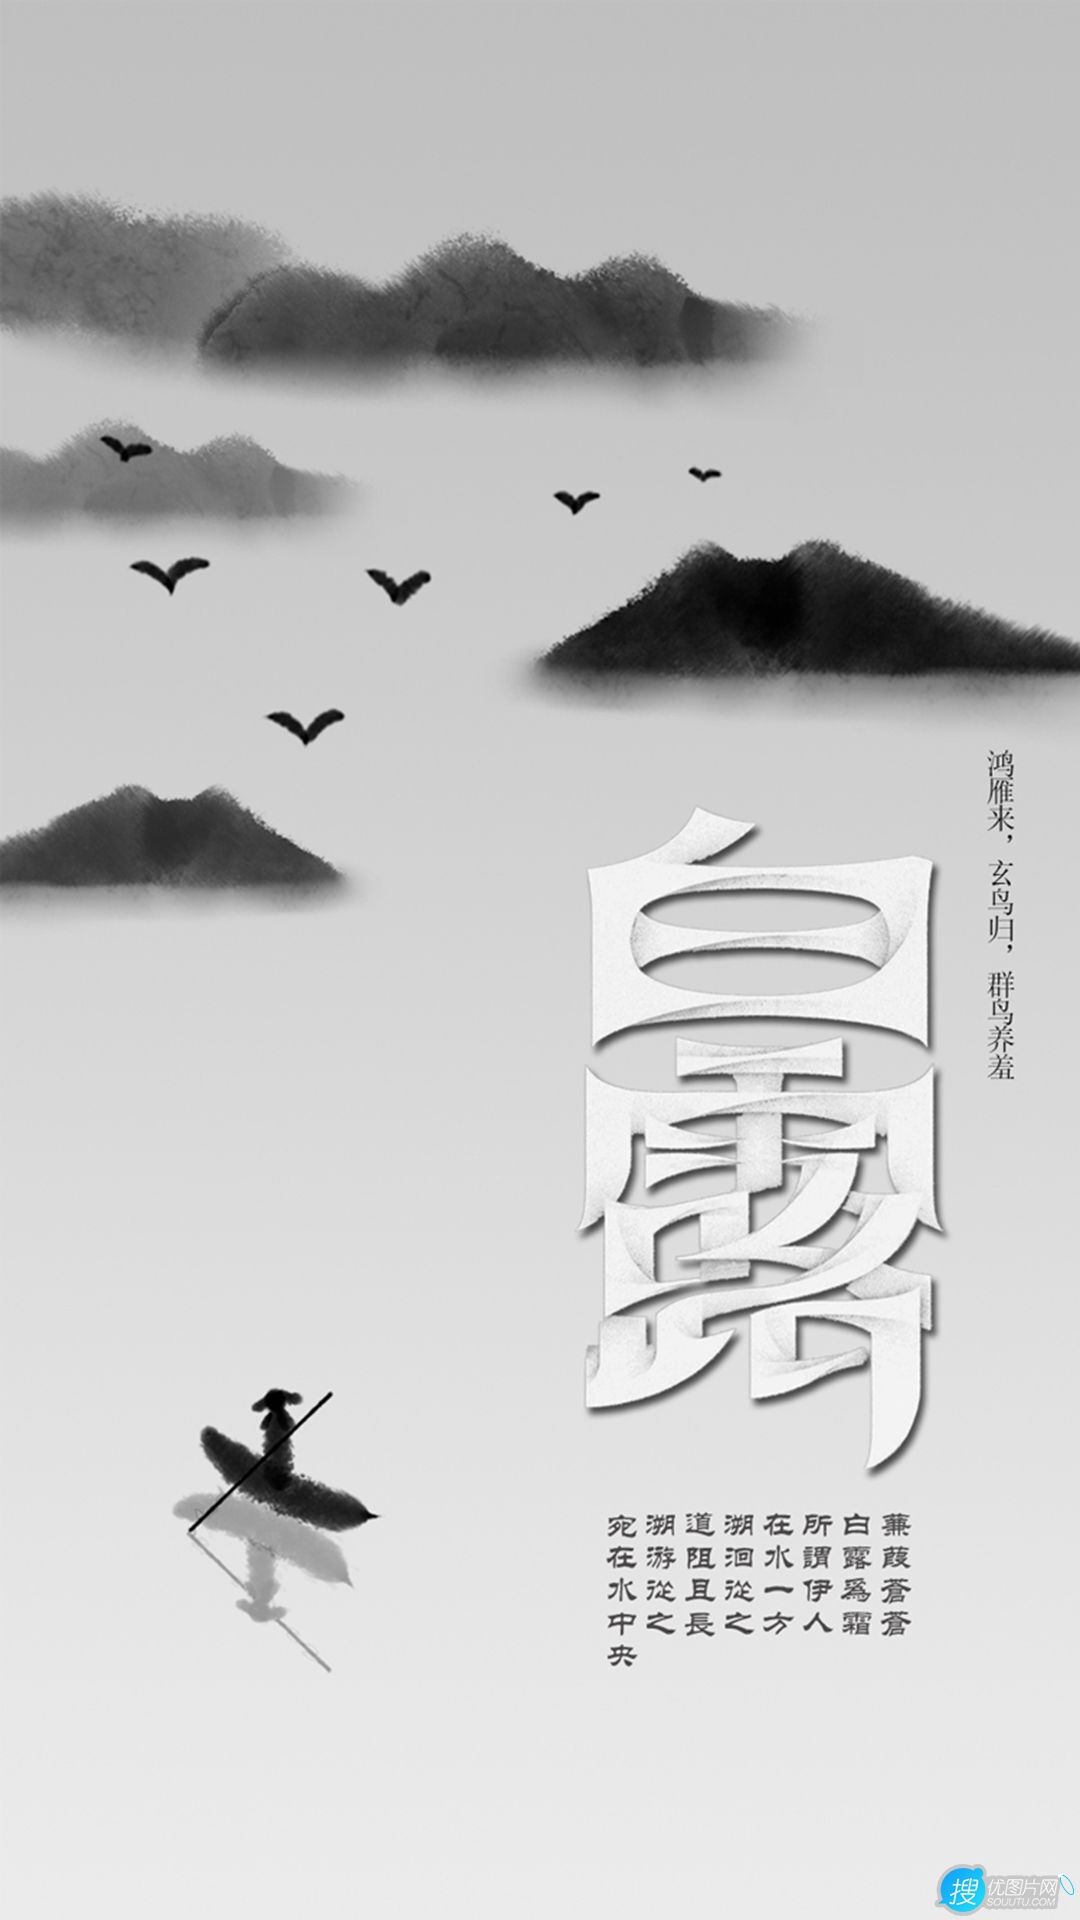 蝶舞花间，渔舟山水，白鹤祥瑞，唯美中国风，中国画主题白露节气手机壁纸套图4